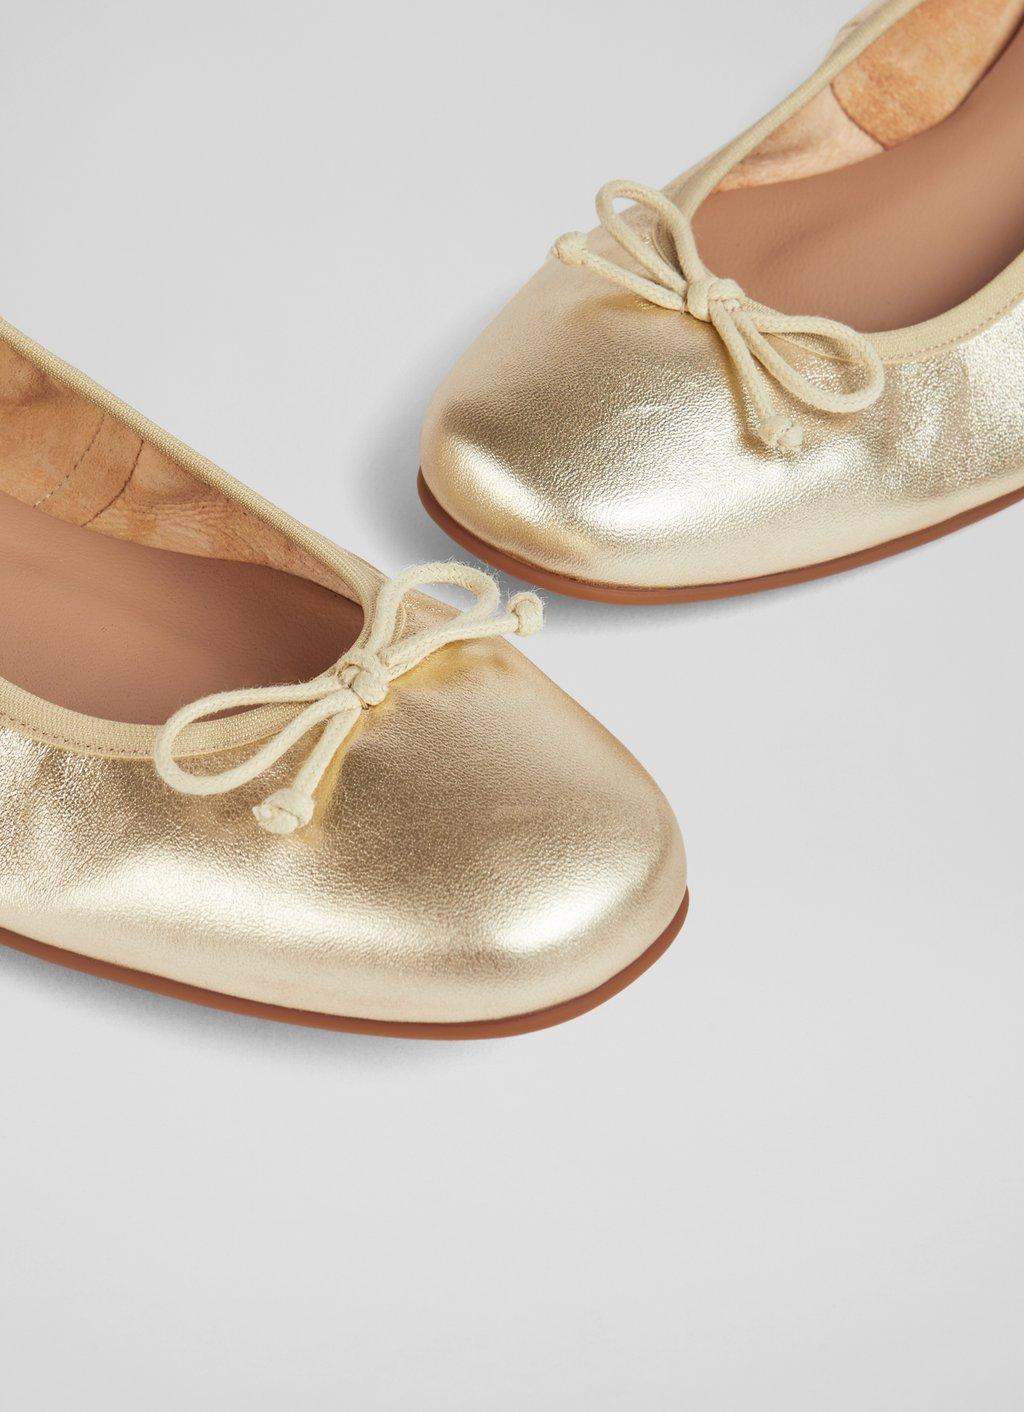 Melankoli Stå sammen tak skal du have Trilly Gold Metallic Leather Ballerina Pumps | Shoes | Collections |  L.K.Bennett, London